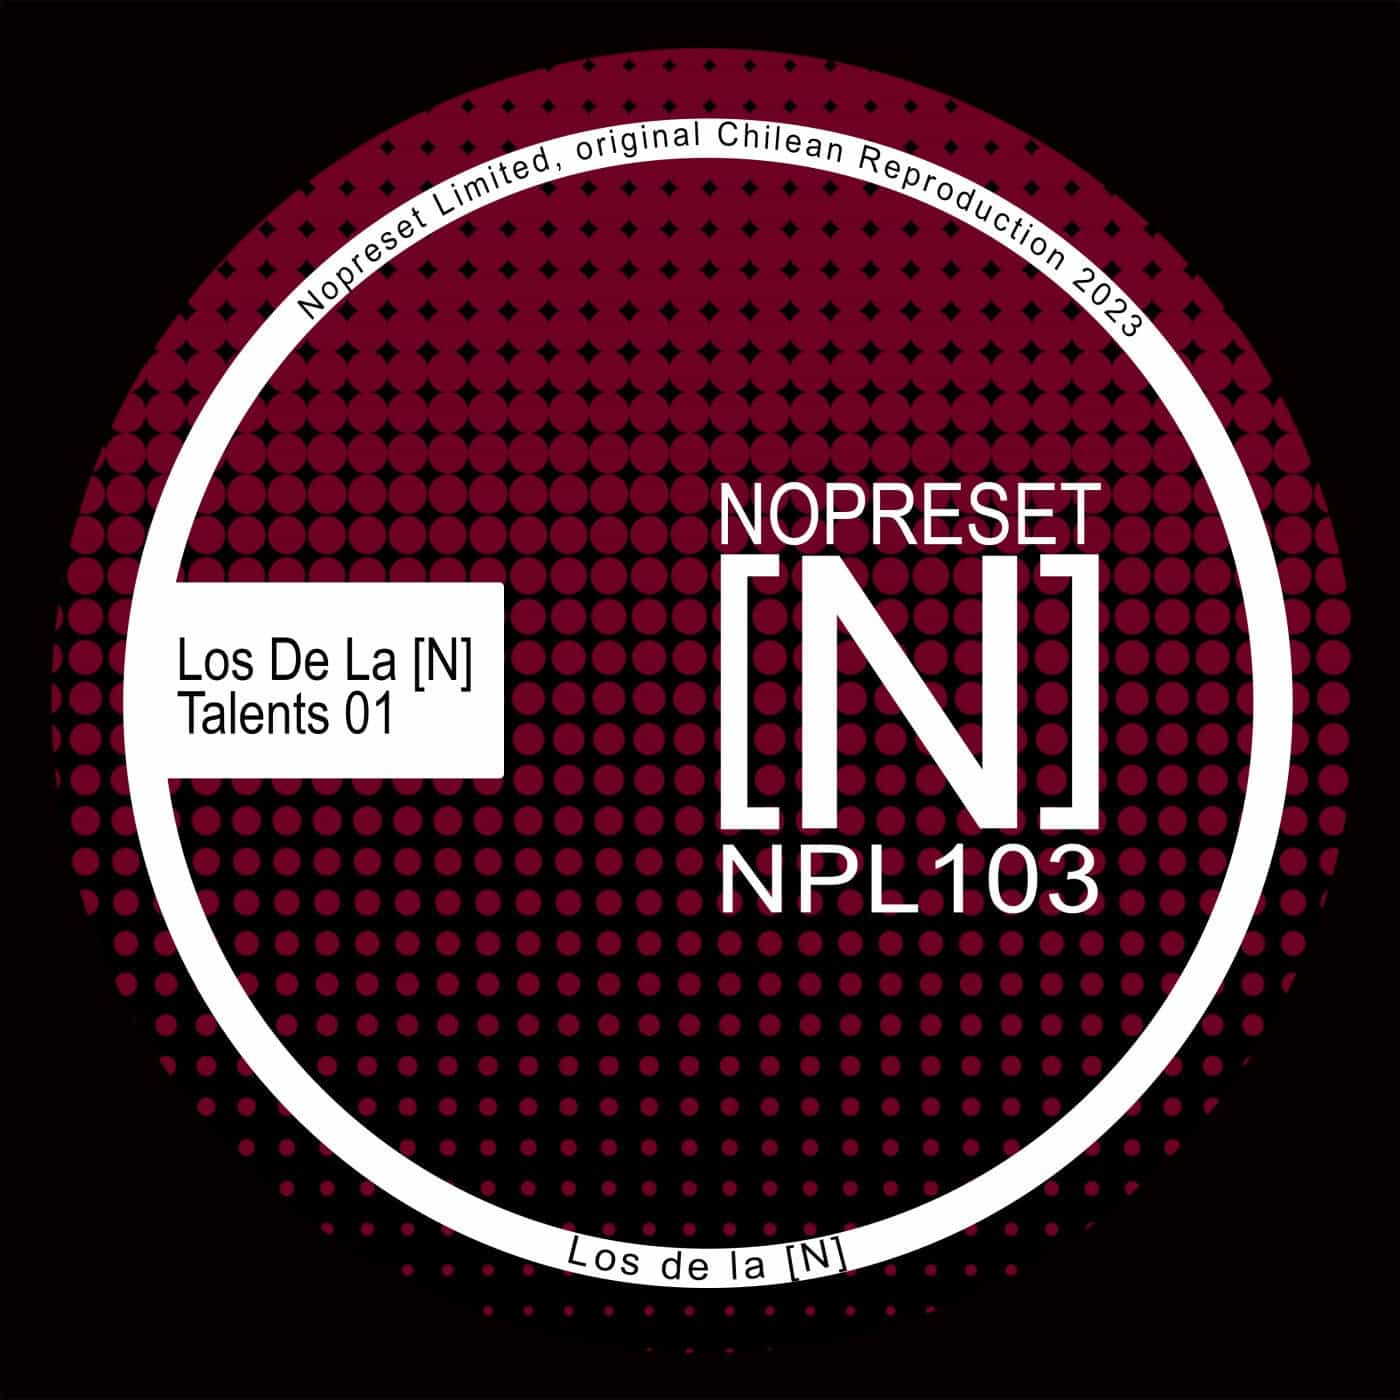 image cover: VA - Los De La [N] Talents 01 / NPL103